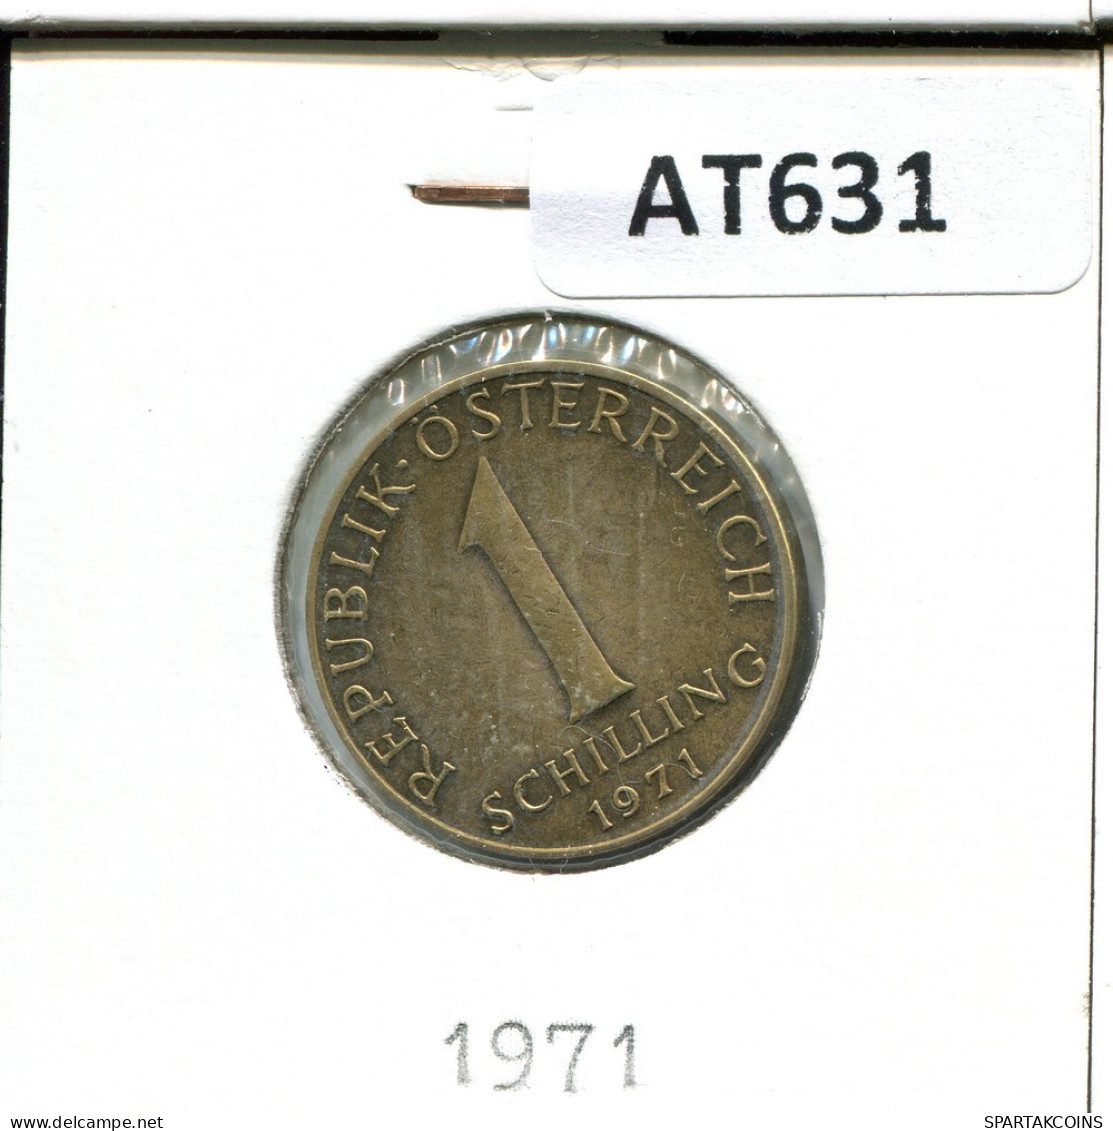 1 SCHILLING 1971 AUSTRIA Coin #AT631.U.A - Austria